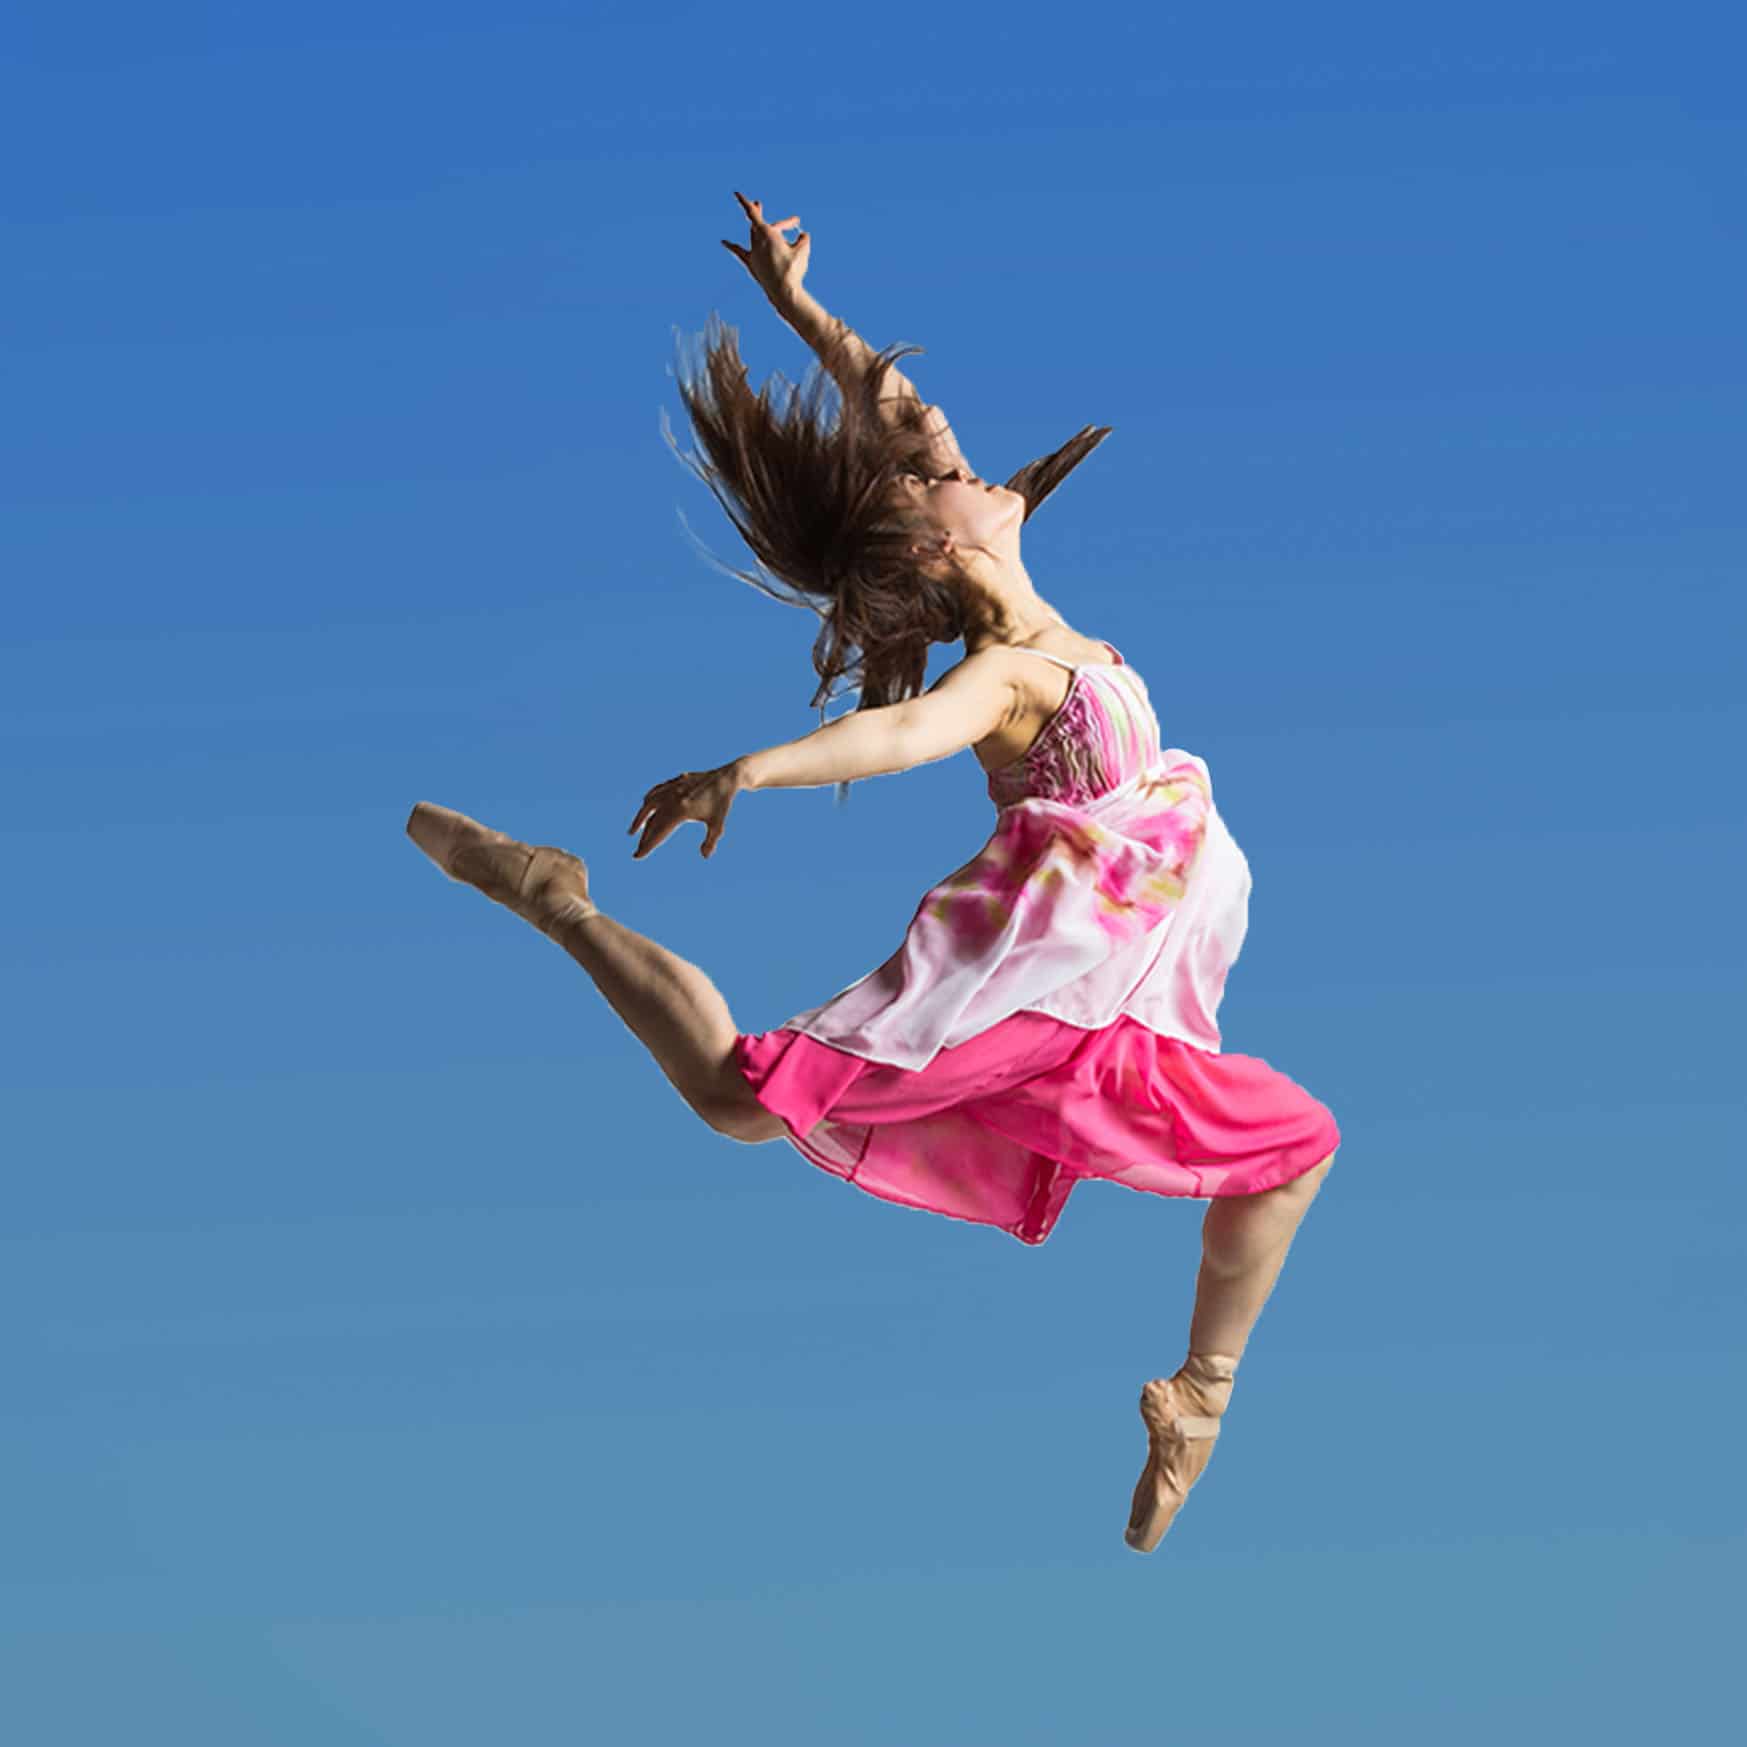 Derek Ford Studious Dancer Jumping